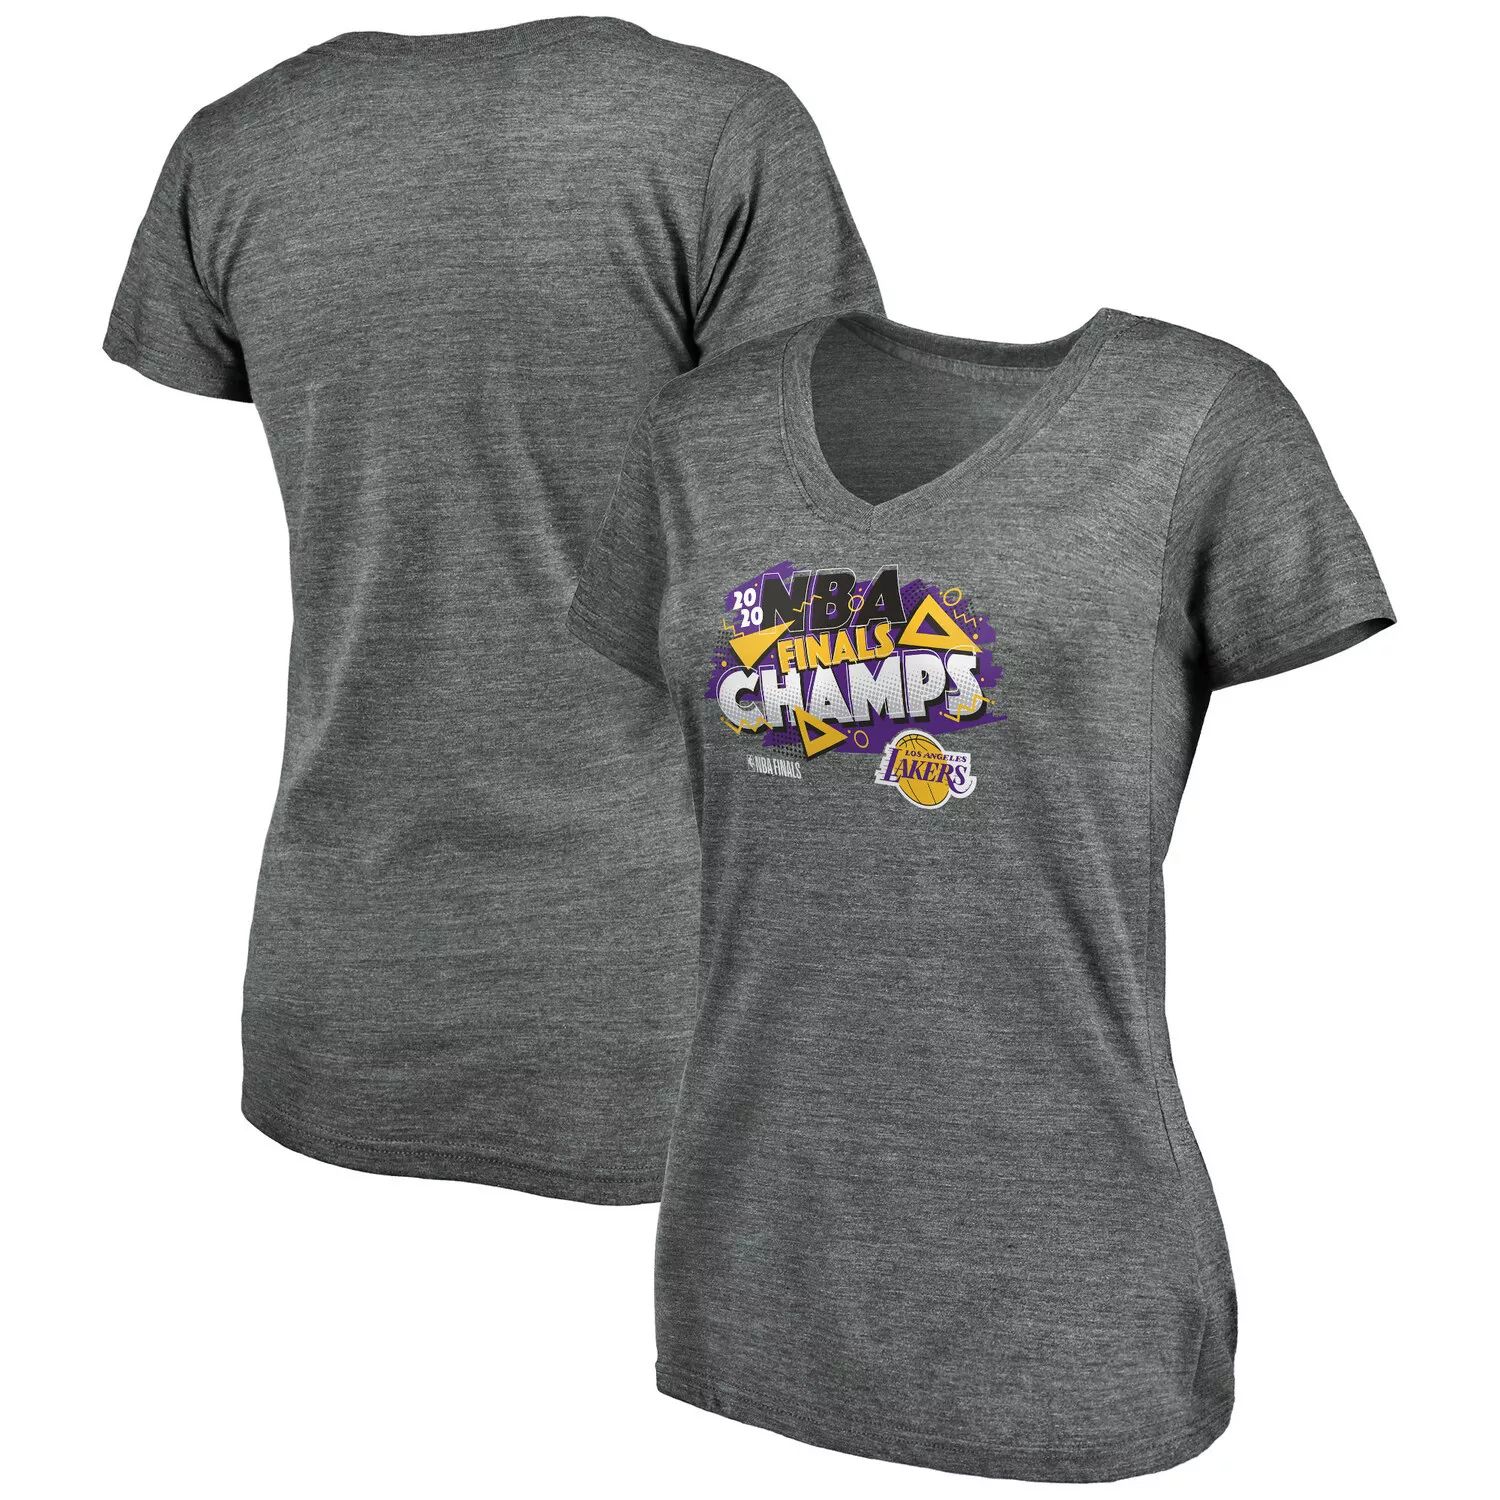 Женская футболка с V-образным вырезом и фирменным логотипом Fanatics «Лос-Анджелес Лейкерс», финал чемпионата НБА 2020 года, спасенная The Buzzer Fanatics